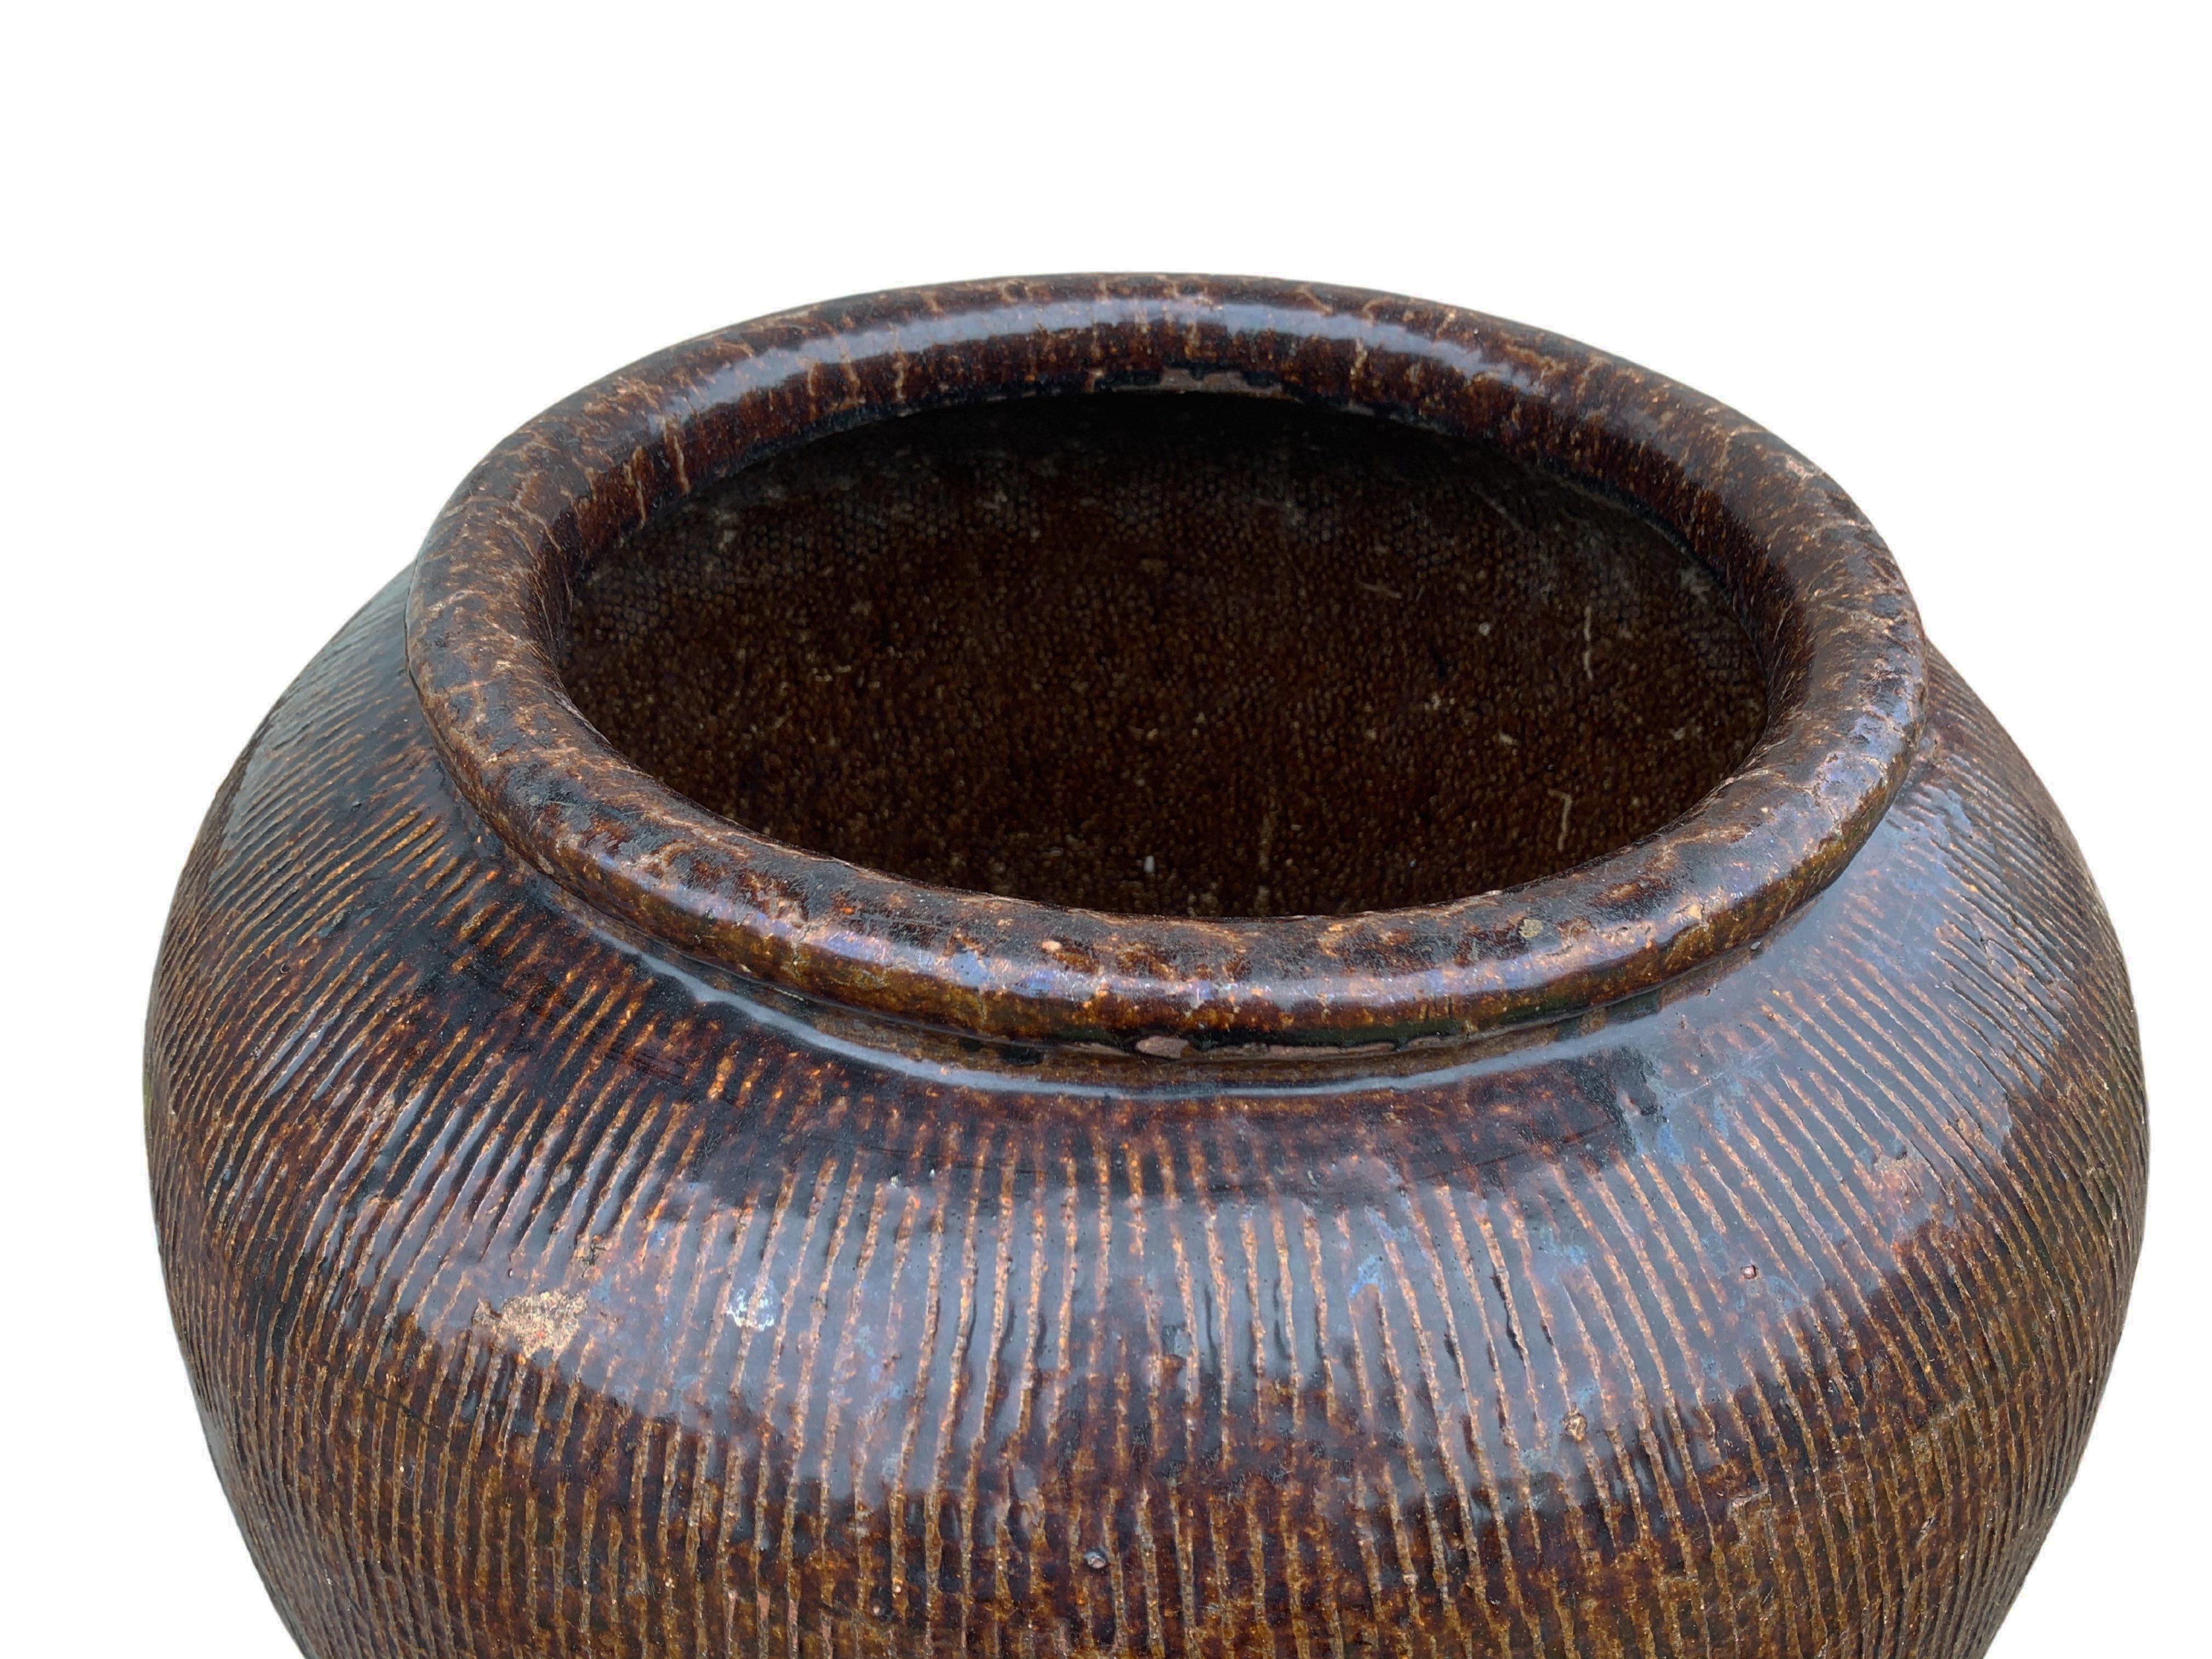 Antique Chinese Glazed Ceramic Soy Sauce Jar, c. 1900 1